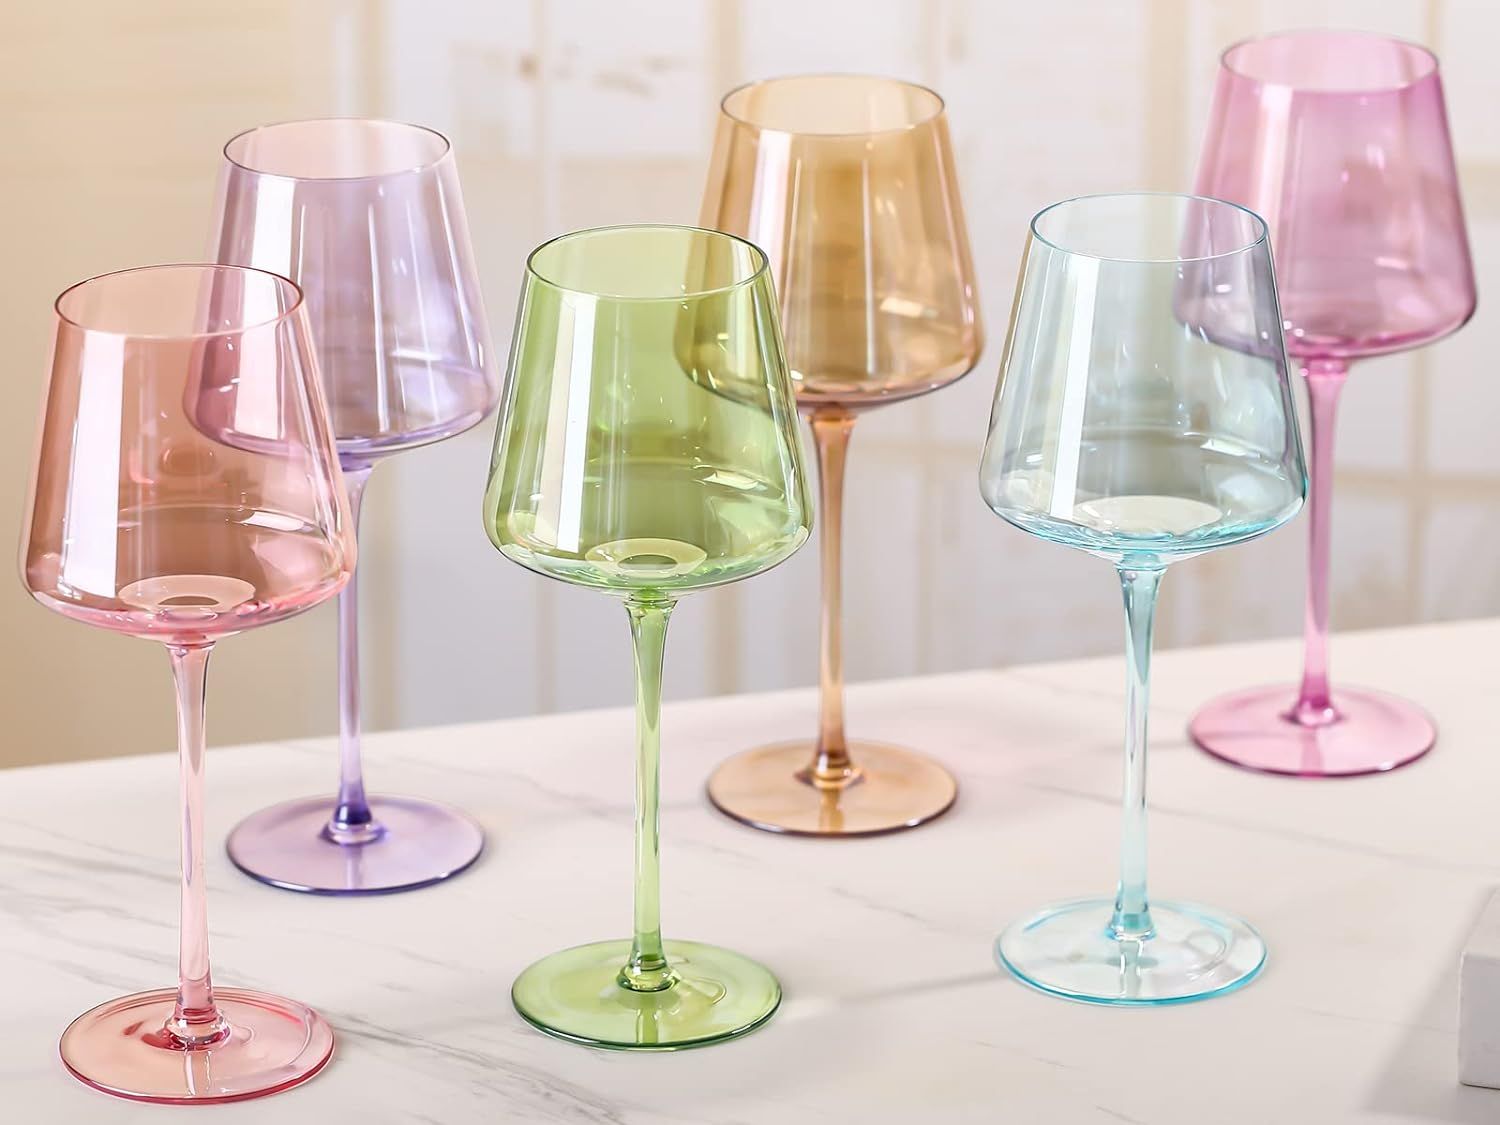 Physkoa Colored Wine Glasses Set of 6-16 ounce Multi Colored Wine Glasses with Long Stem, Colorfu... | Amazon (US)